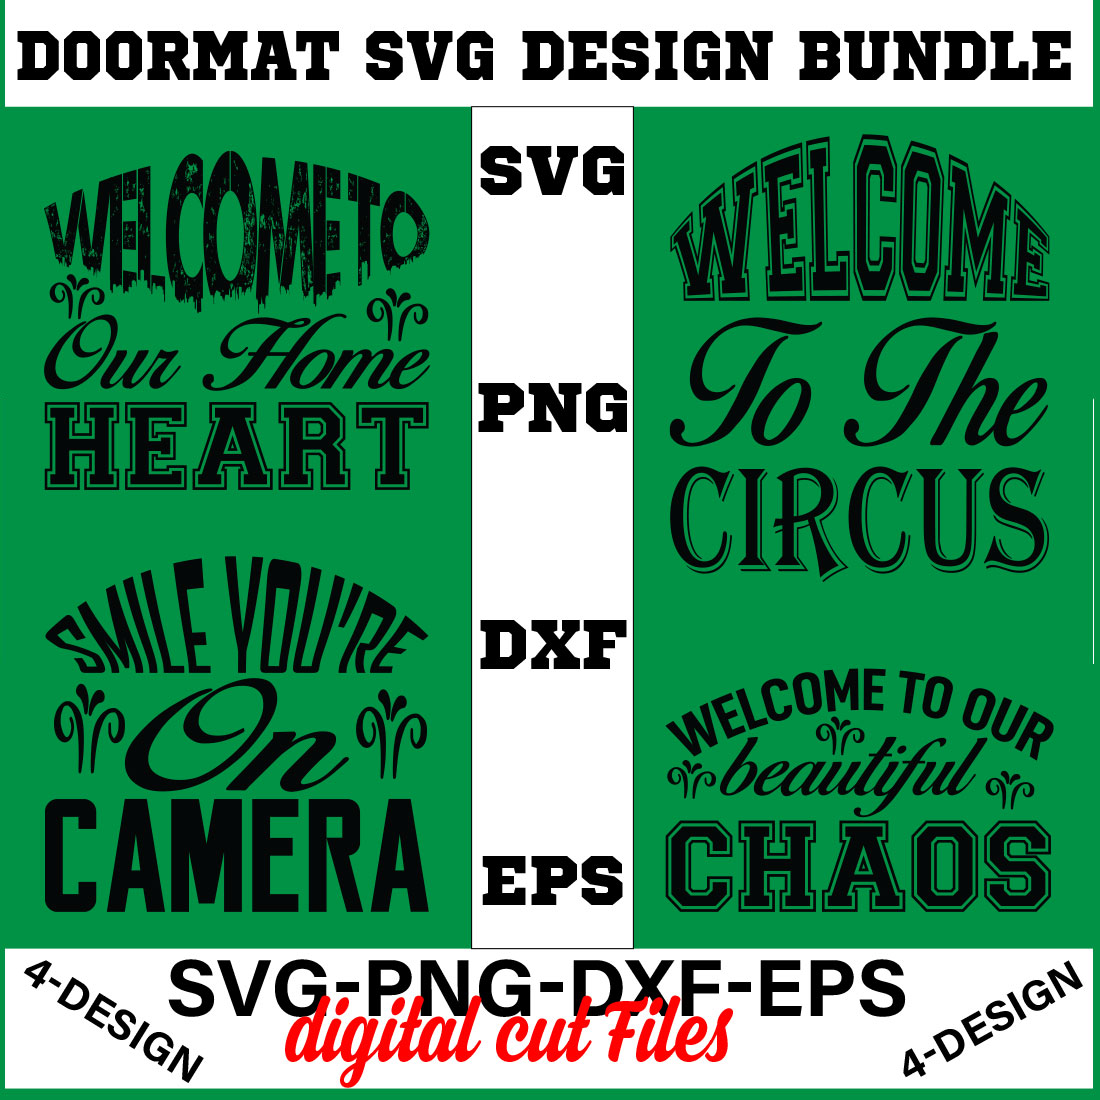 Doormat Quote Designs SVG Cut File Bundle for Cricut Volume-01 cover image.